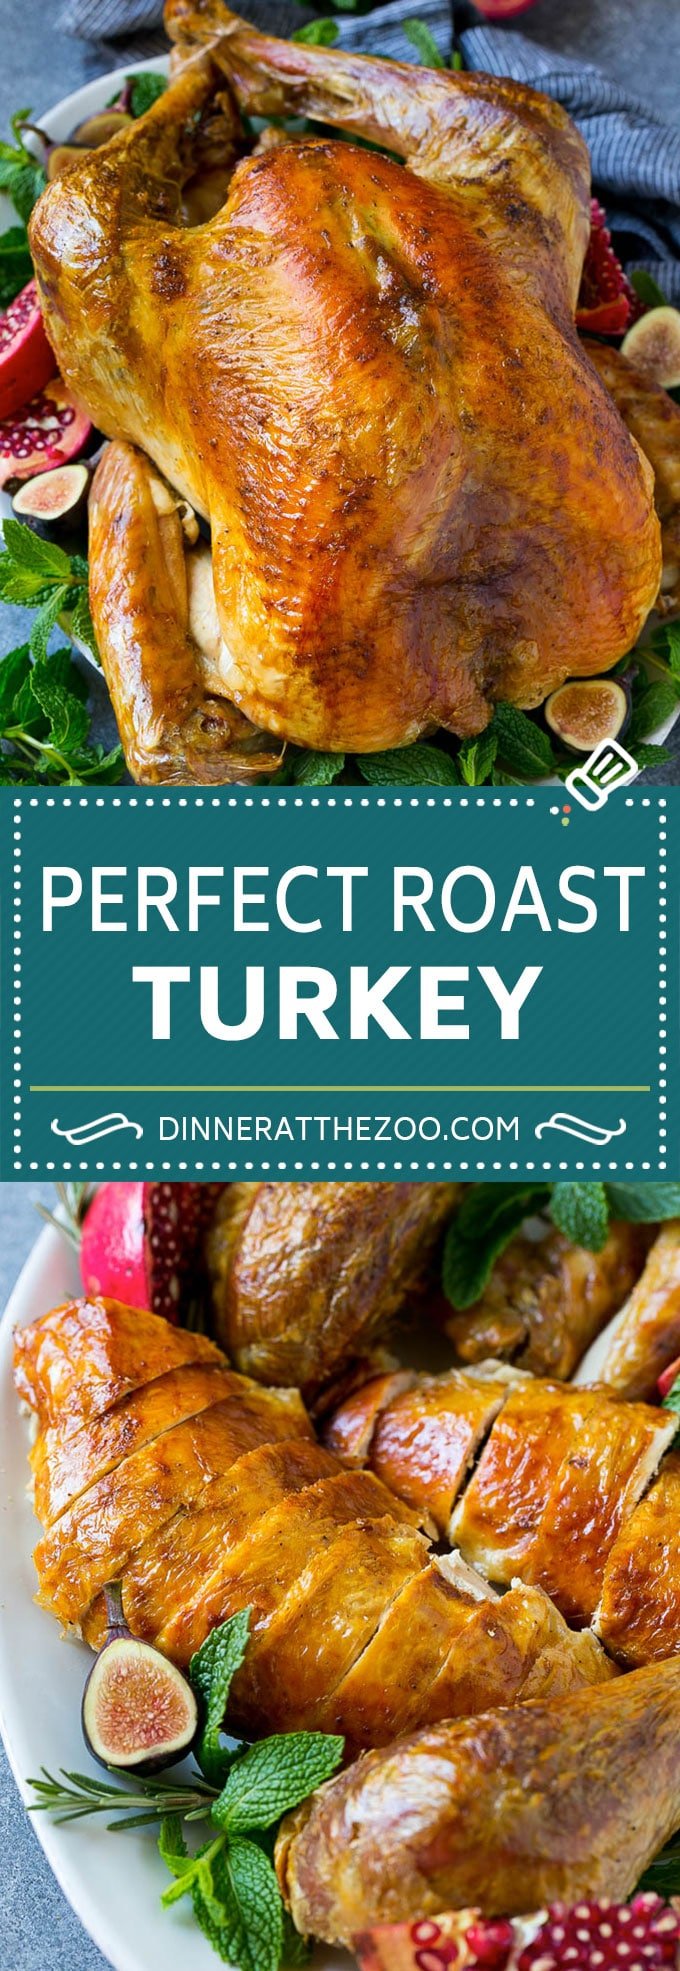 Roast Turkey Recipe | Thanksgiving Turkey | Holiday Turkey | Baked Turkey #turkey #thanksgiving #christmas #dinner #glutenfree #dinneratthezoo